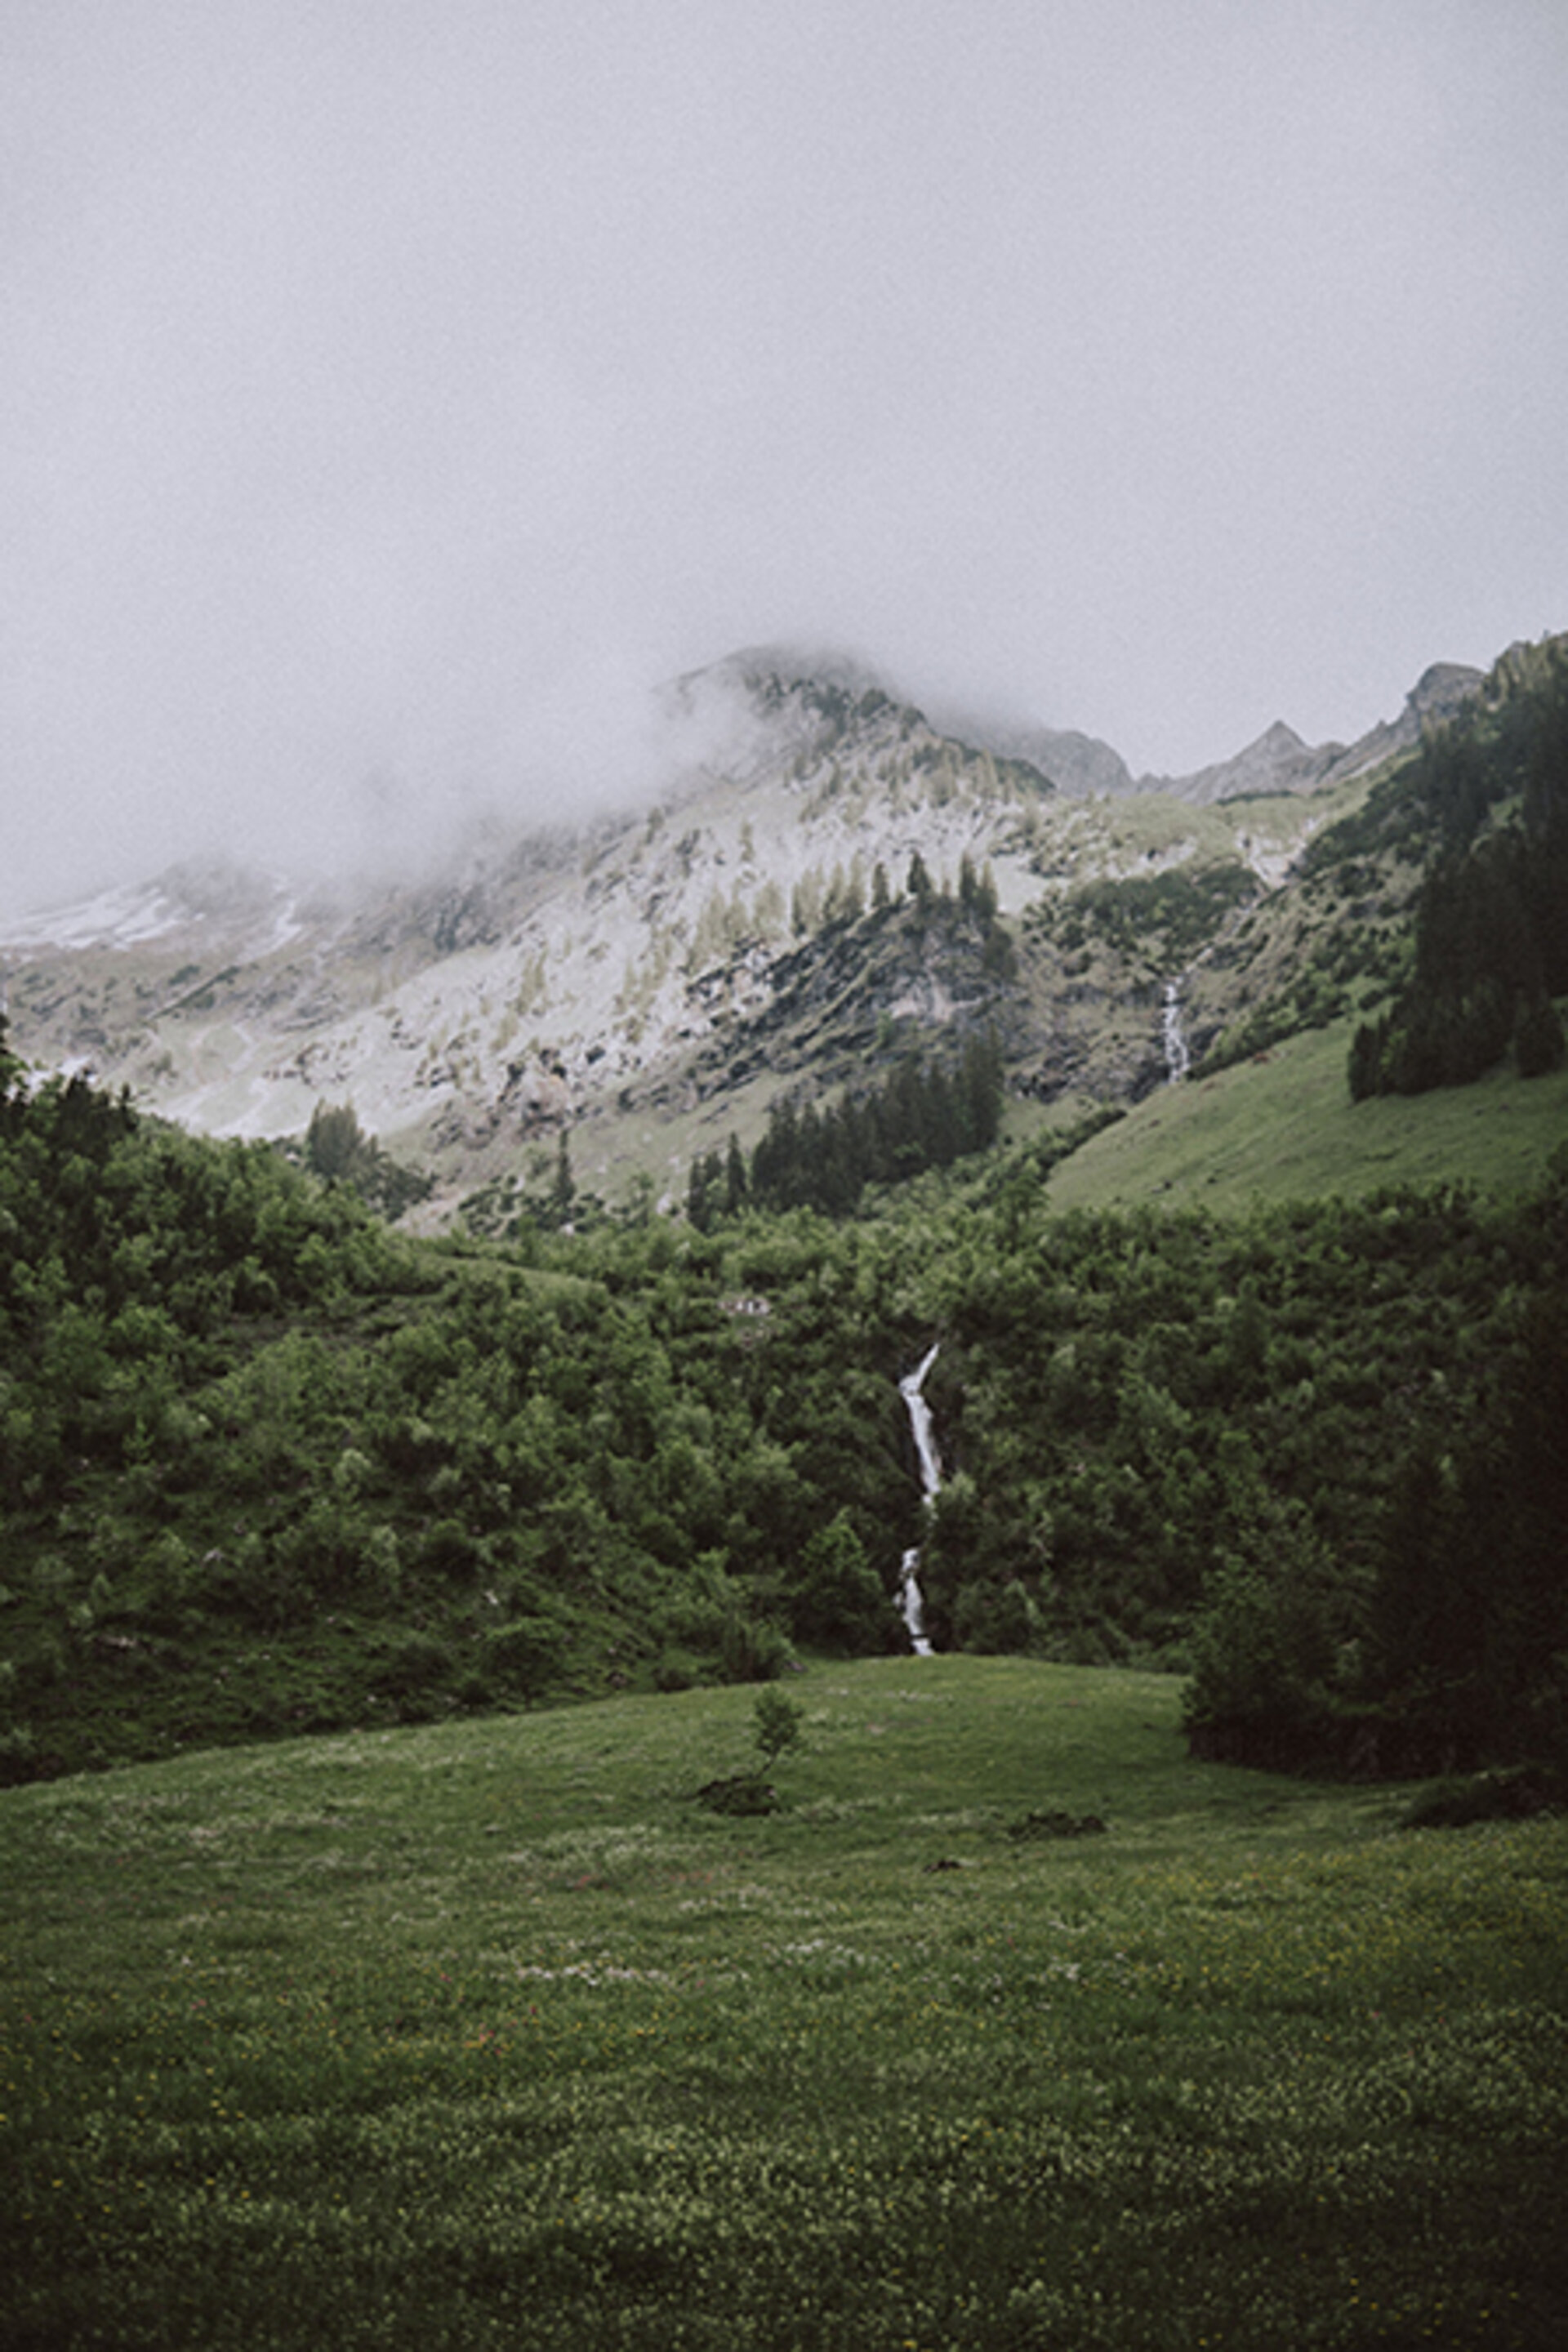 Kleiner Wasserfall zwischen saftig grünen Wiesen mit Nebel | Der Engel in Tirol